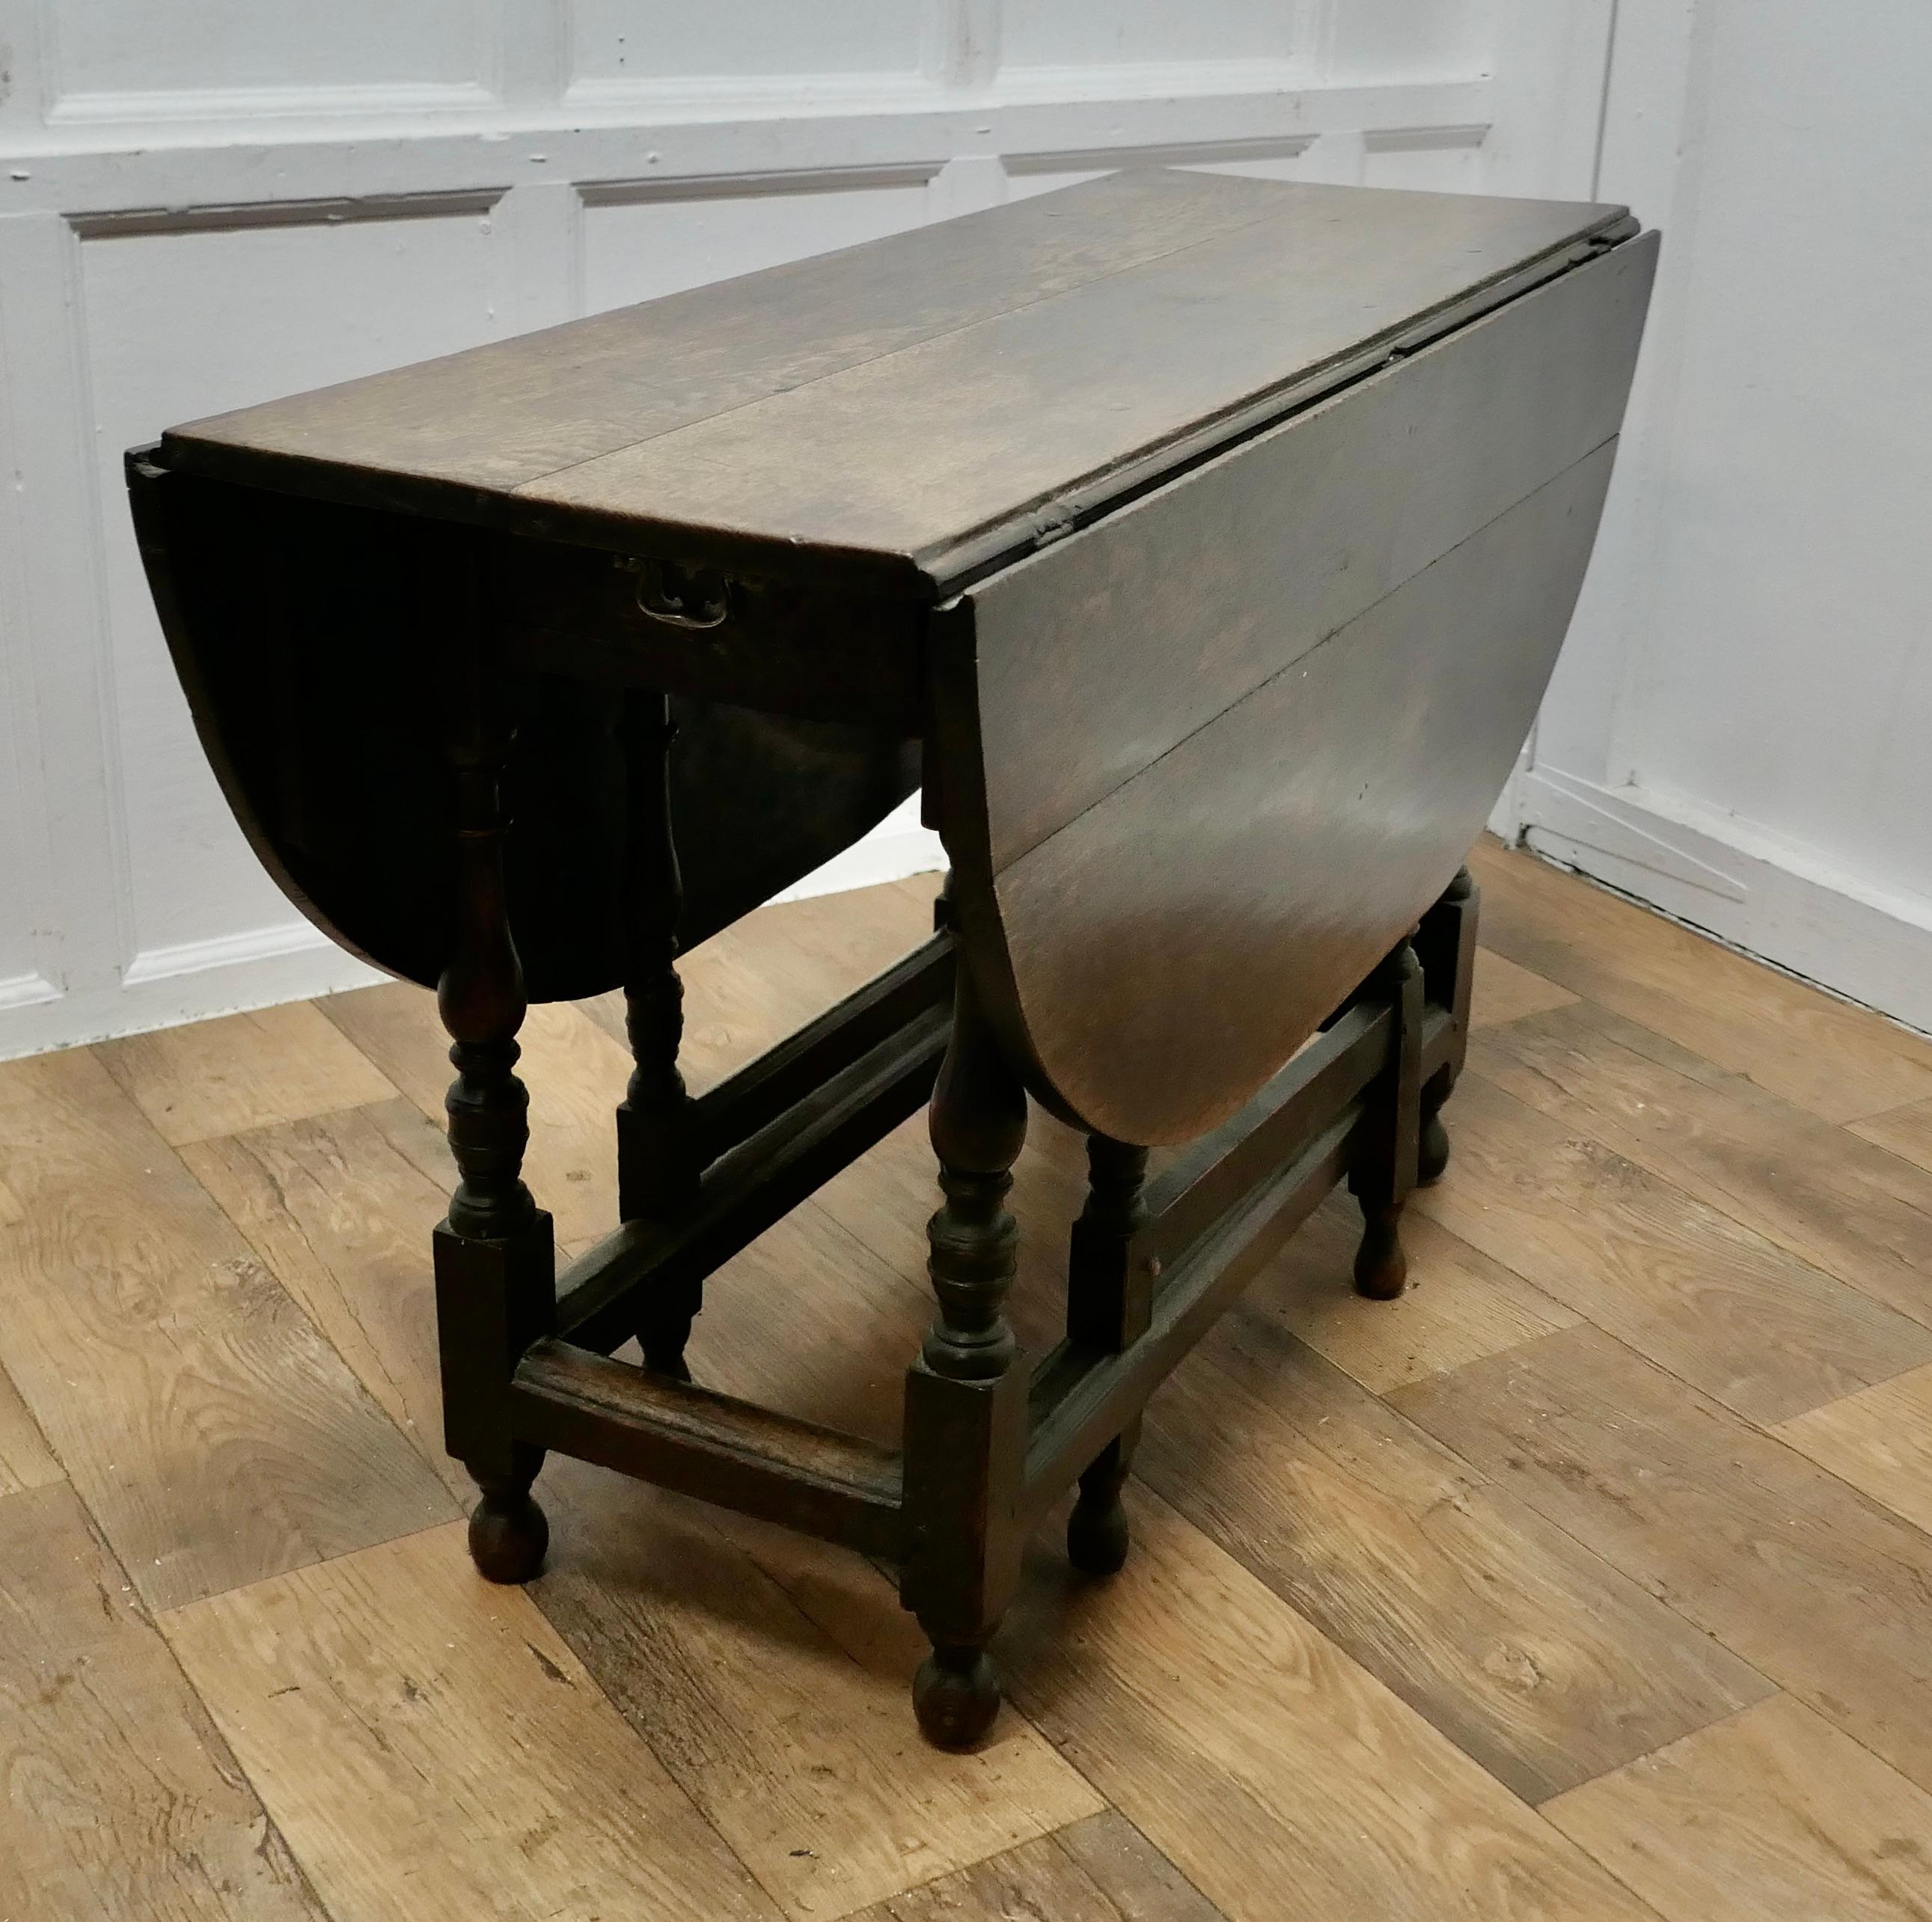 Table de salle à manger à pieds en treillis en Oak du début du 19e siècle

Cette table est très attrayante, elle est fabriquée en chêne massif.
Il s'agit d'une grande table avec un pied en forme de porte de chaque côté pour soutenir les grandes